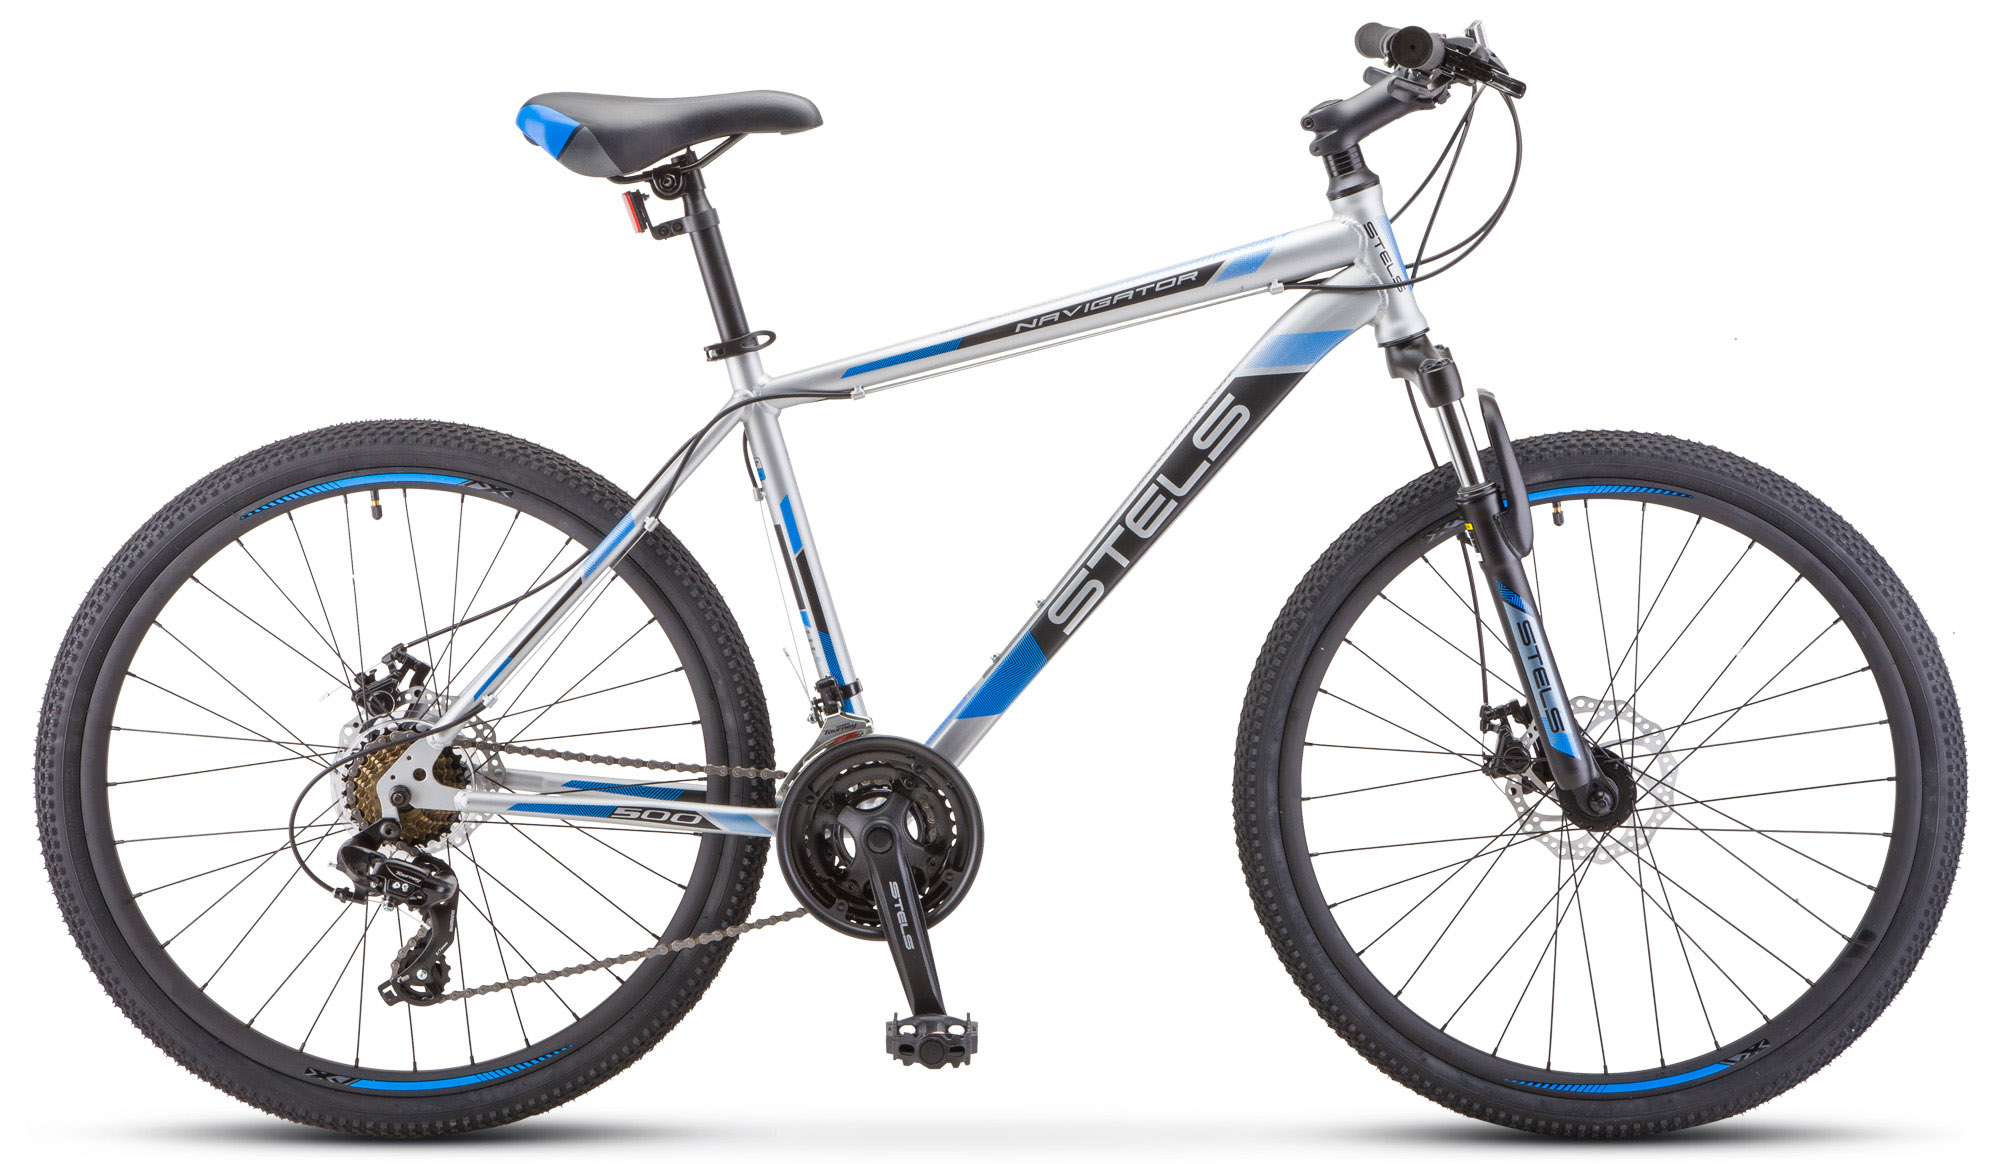  Отзывы о Горном велосипеде Stels Navigator 500 D F010 2020